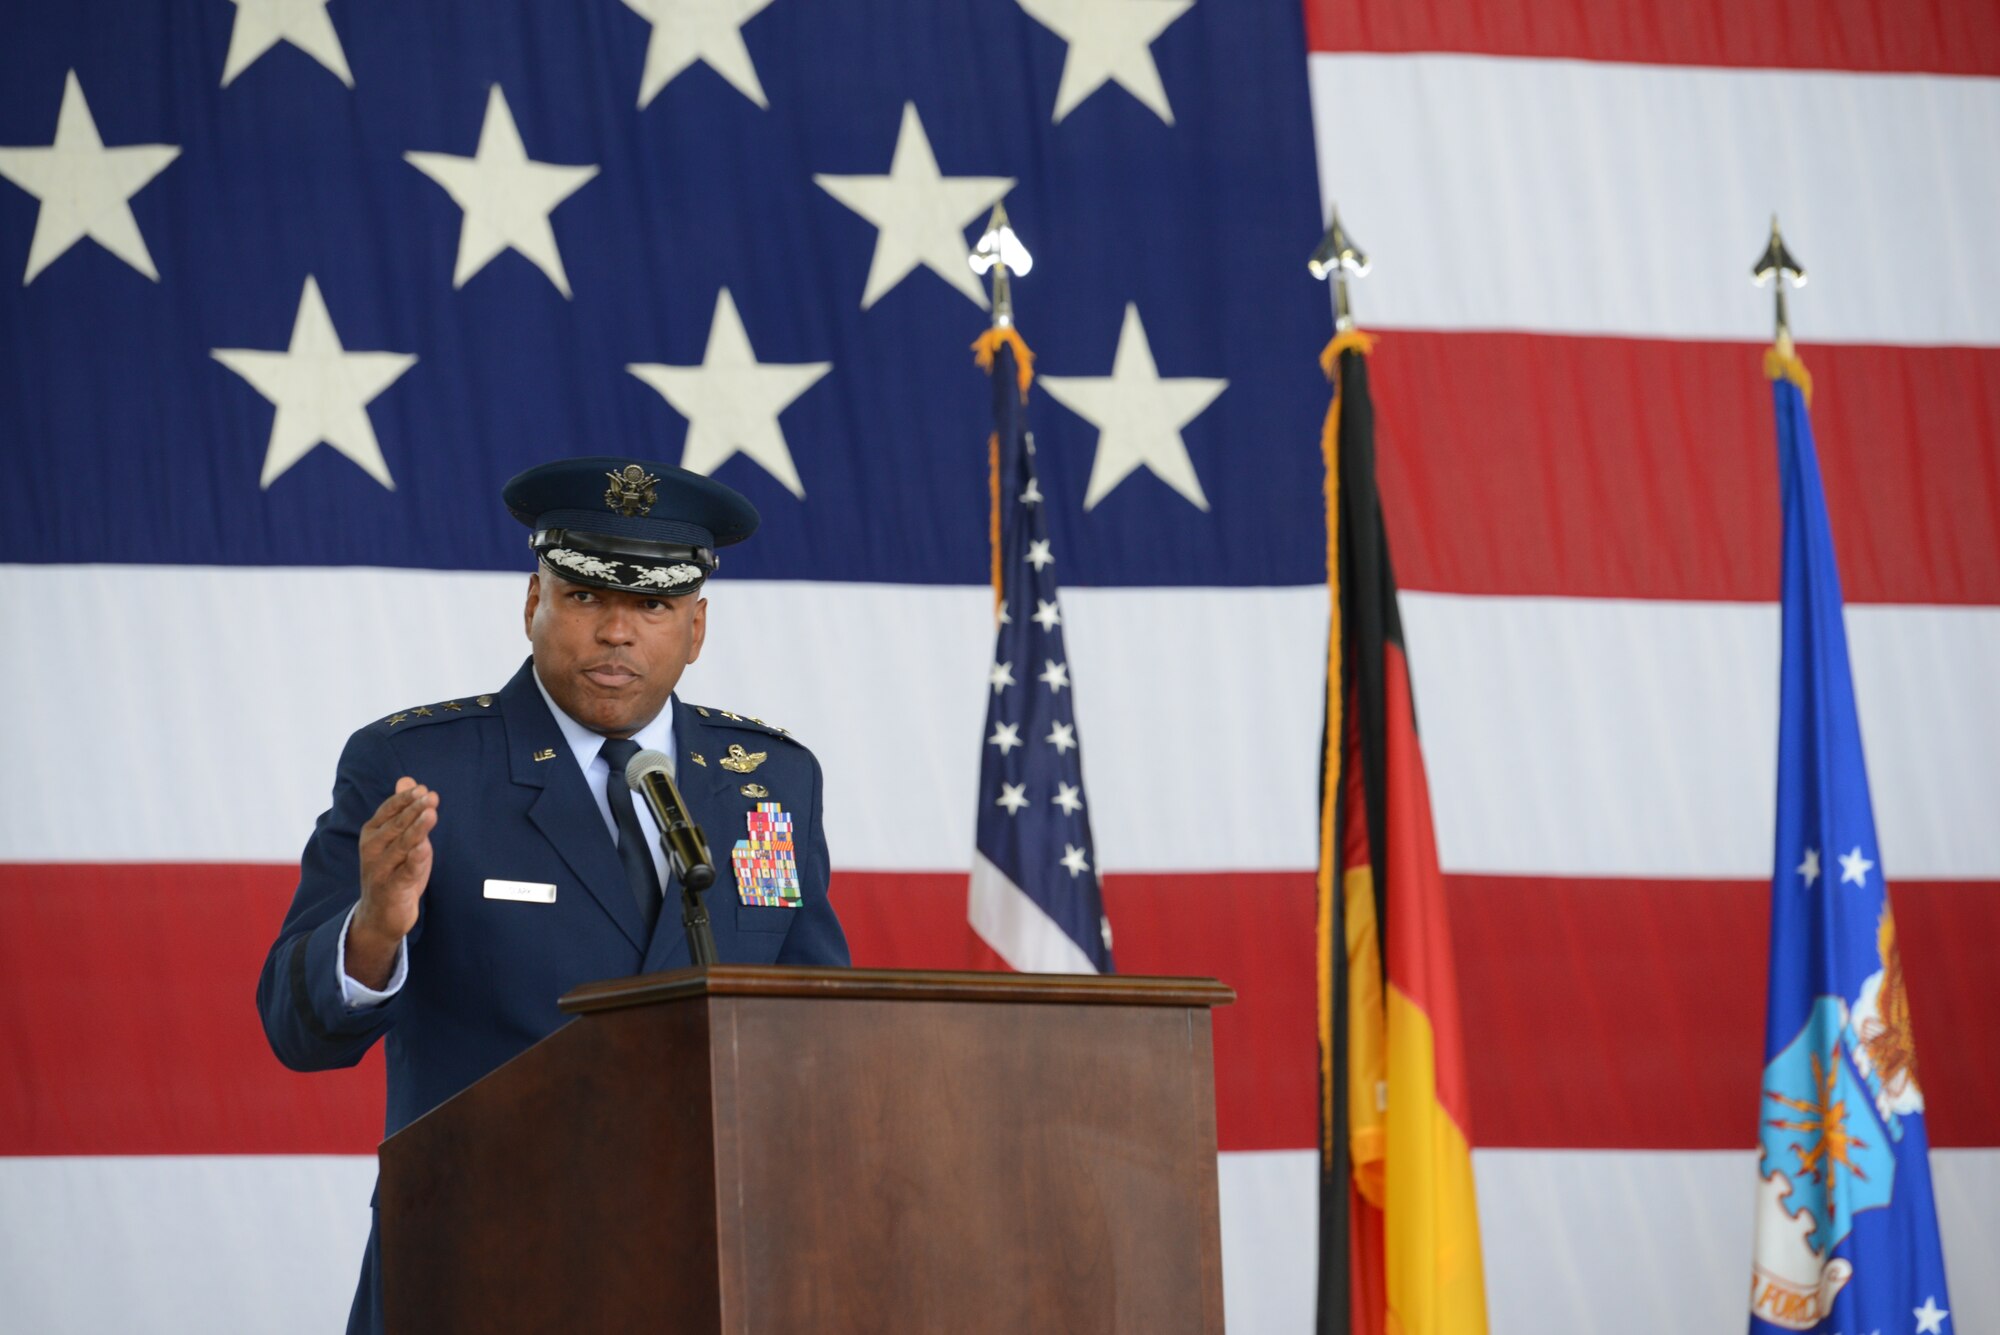 Lt. Gen. Richard Clark delivers remarks